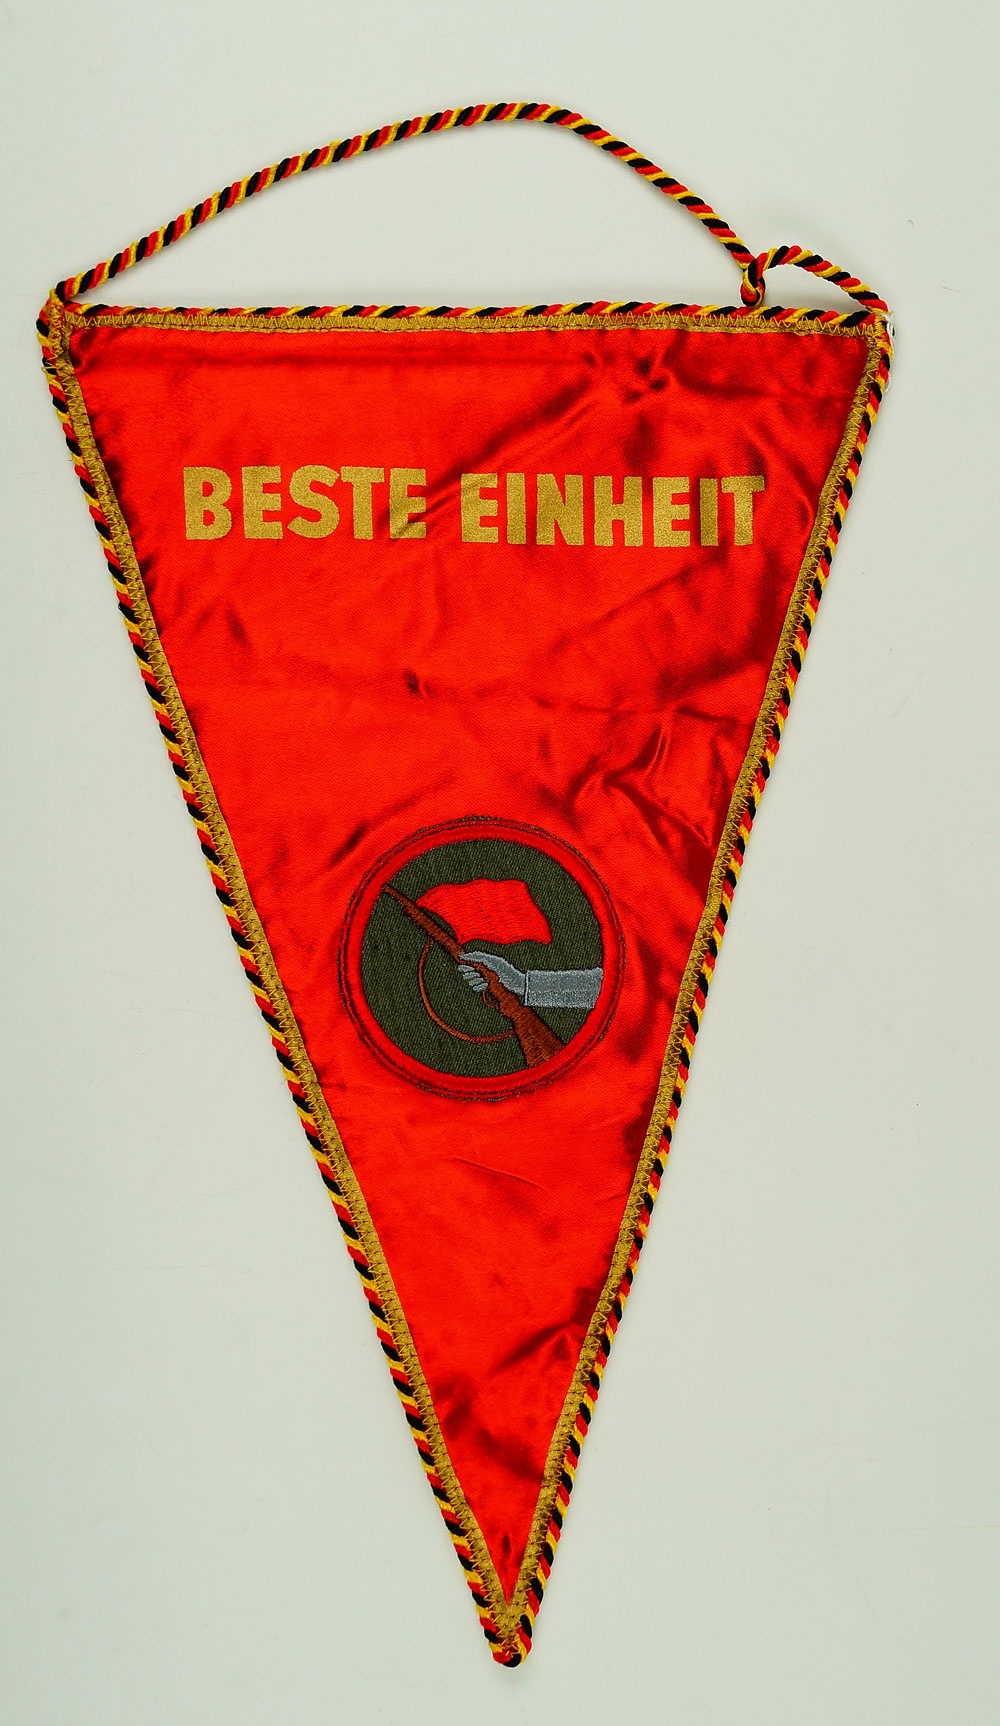 Wimpel "Beste einheit" der Kampfgruppen der DDR, 80er Jahre (Museum Weißenfels - Schloss Neu-Augustusburg CC BY-NC-SA)